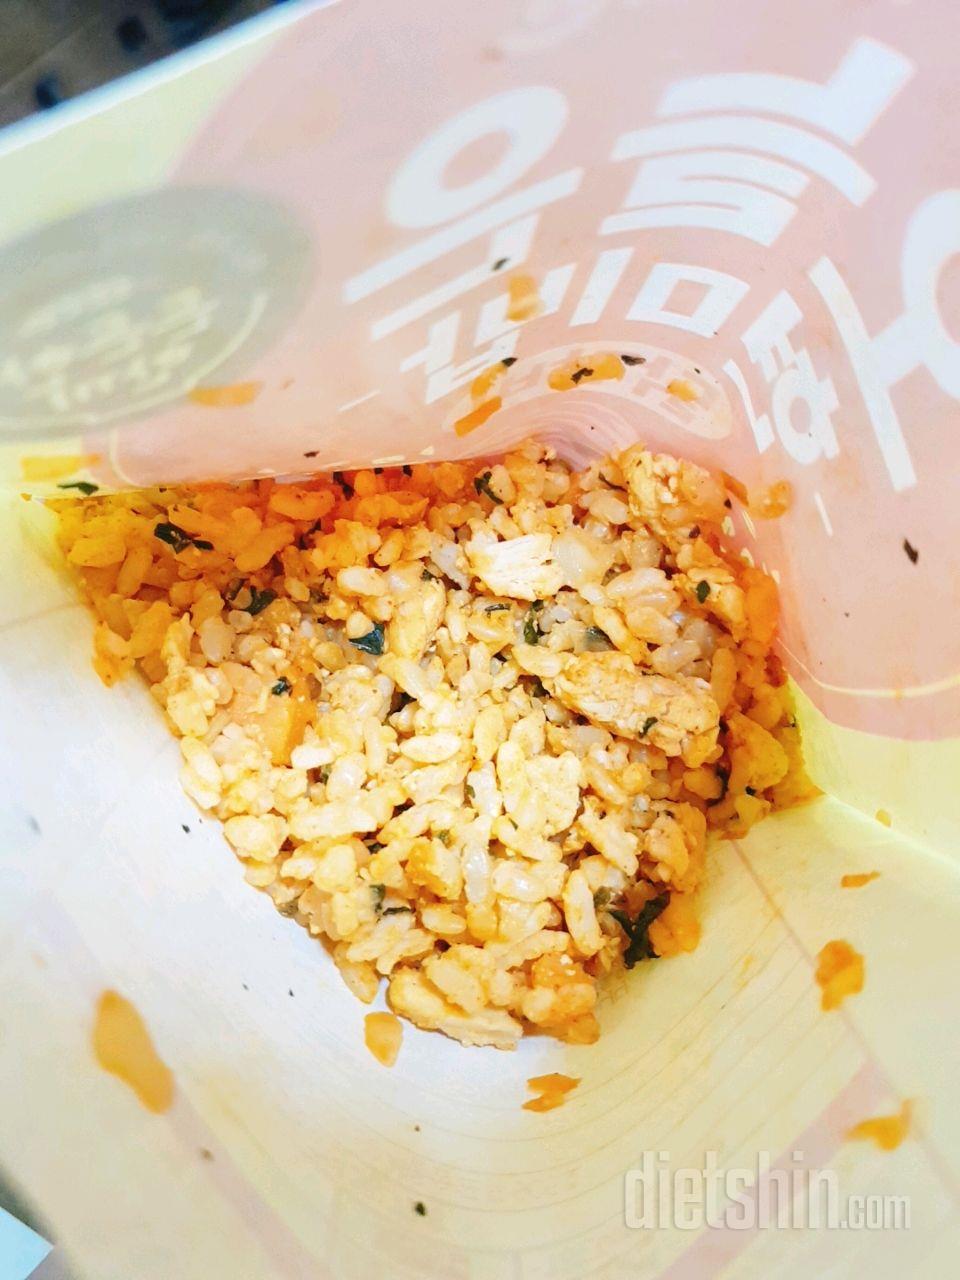 오늘은 현미밥 닭갈비맛 먹어봤어요!